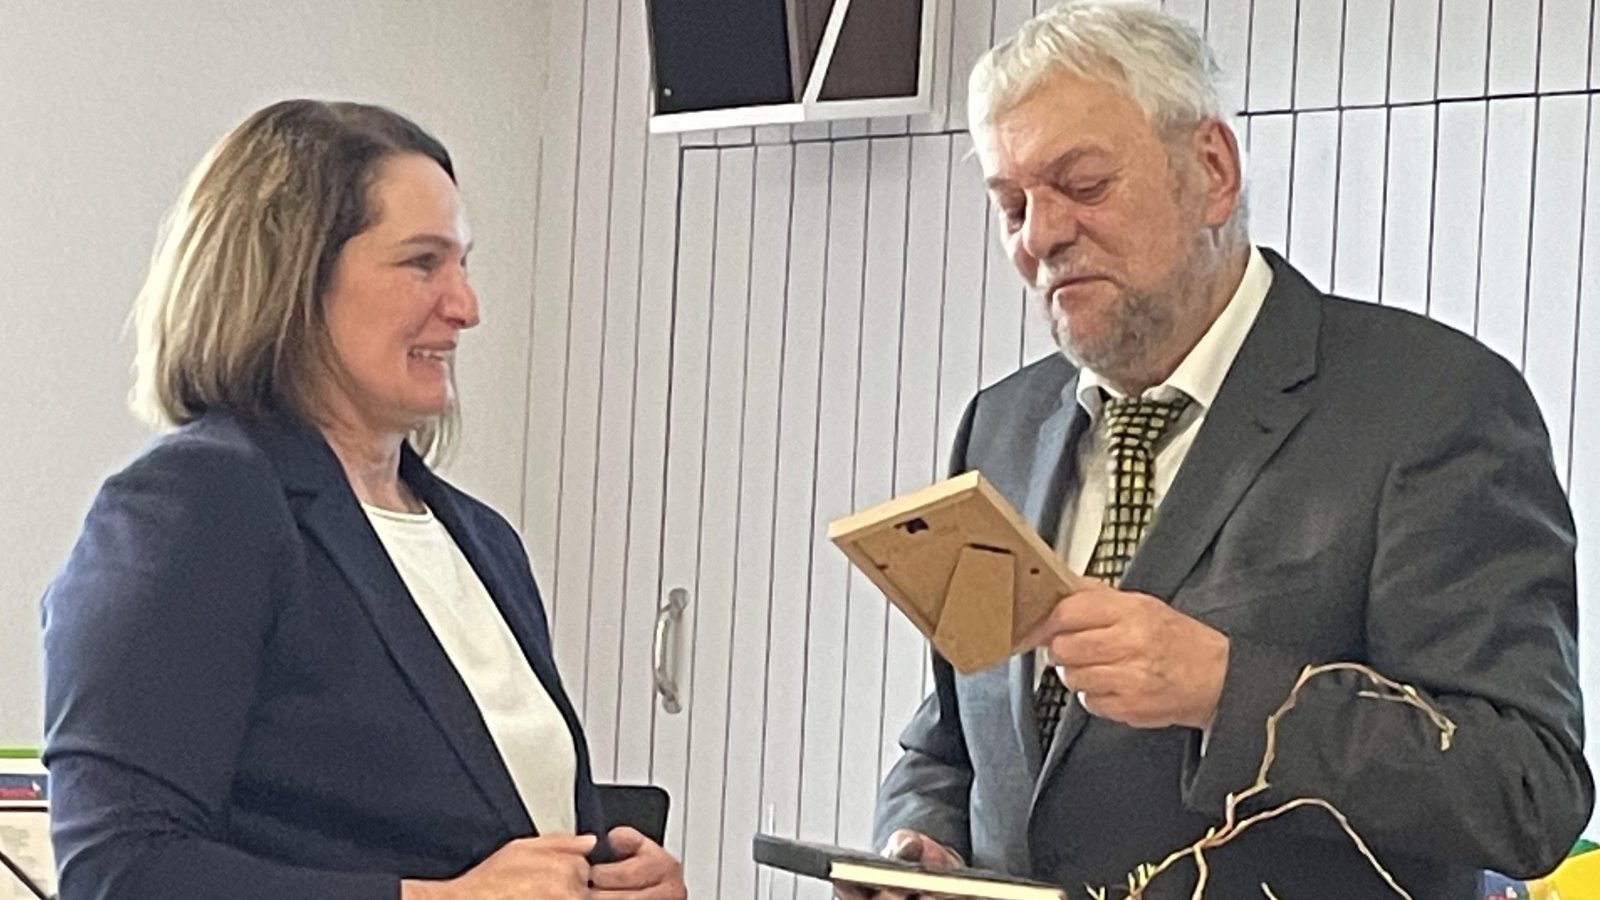 Claus Flaith übergibt Katja Kraft einen eingerahmten Zettel, der an ihre erste Begegnung erinnern soll.  Foto: Stogios